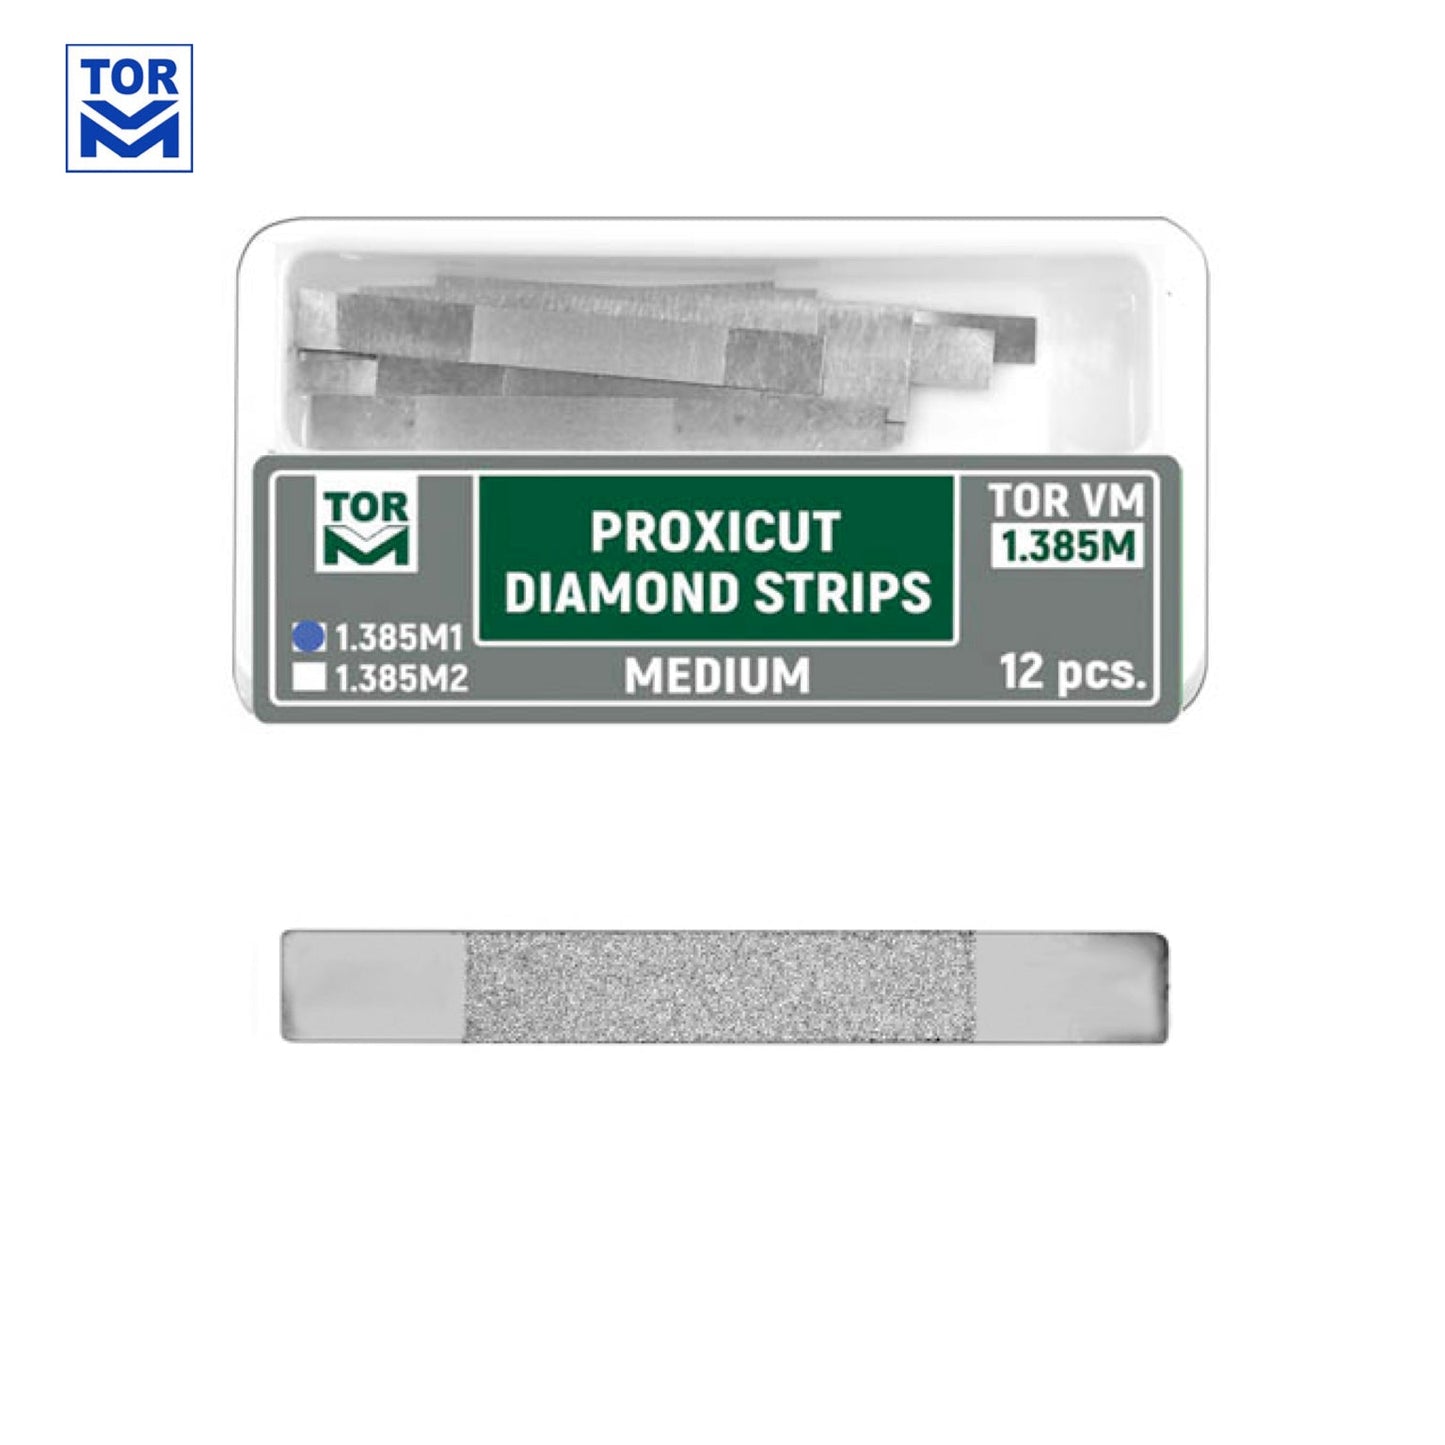 Proxicut Refills (12pcs) - Incidental